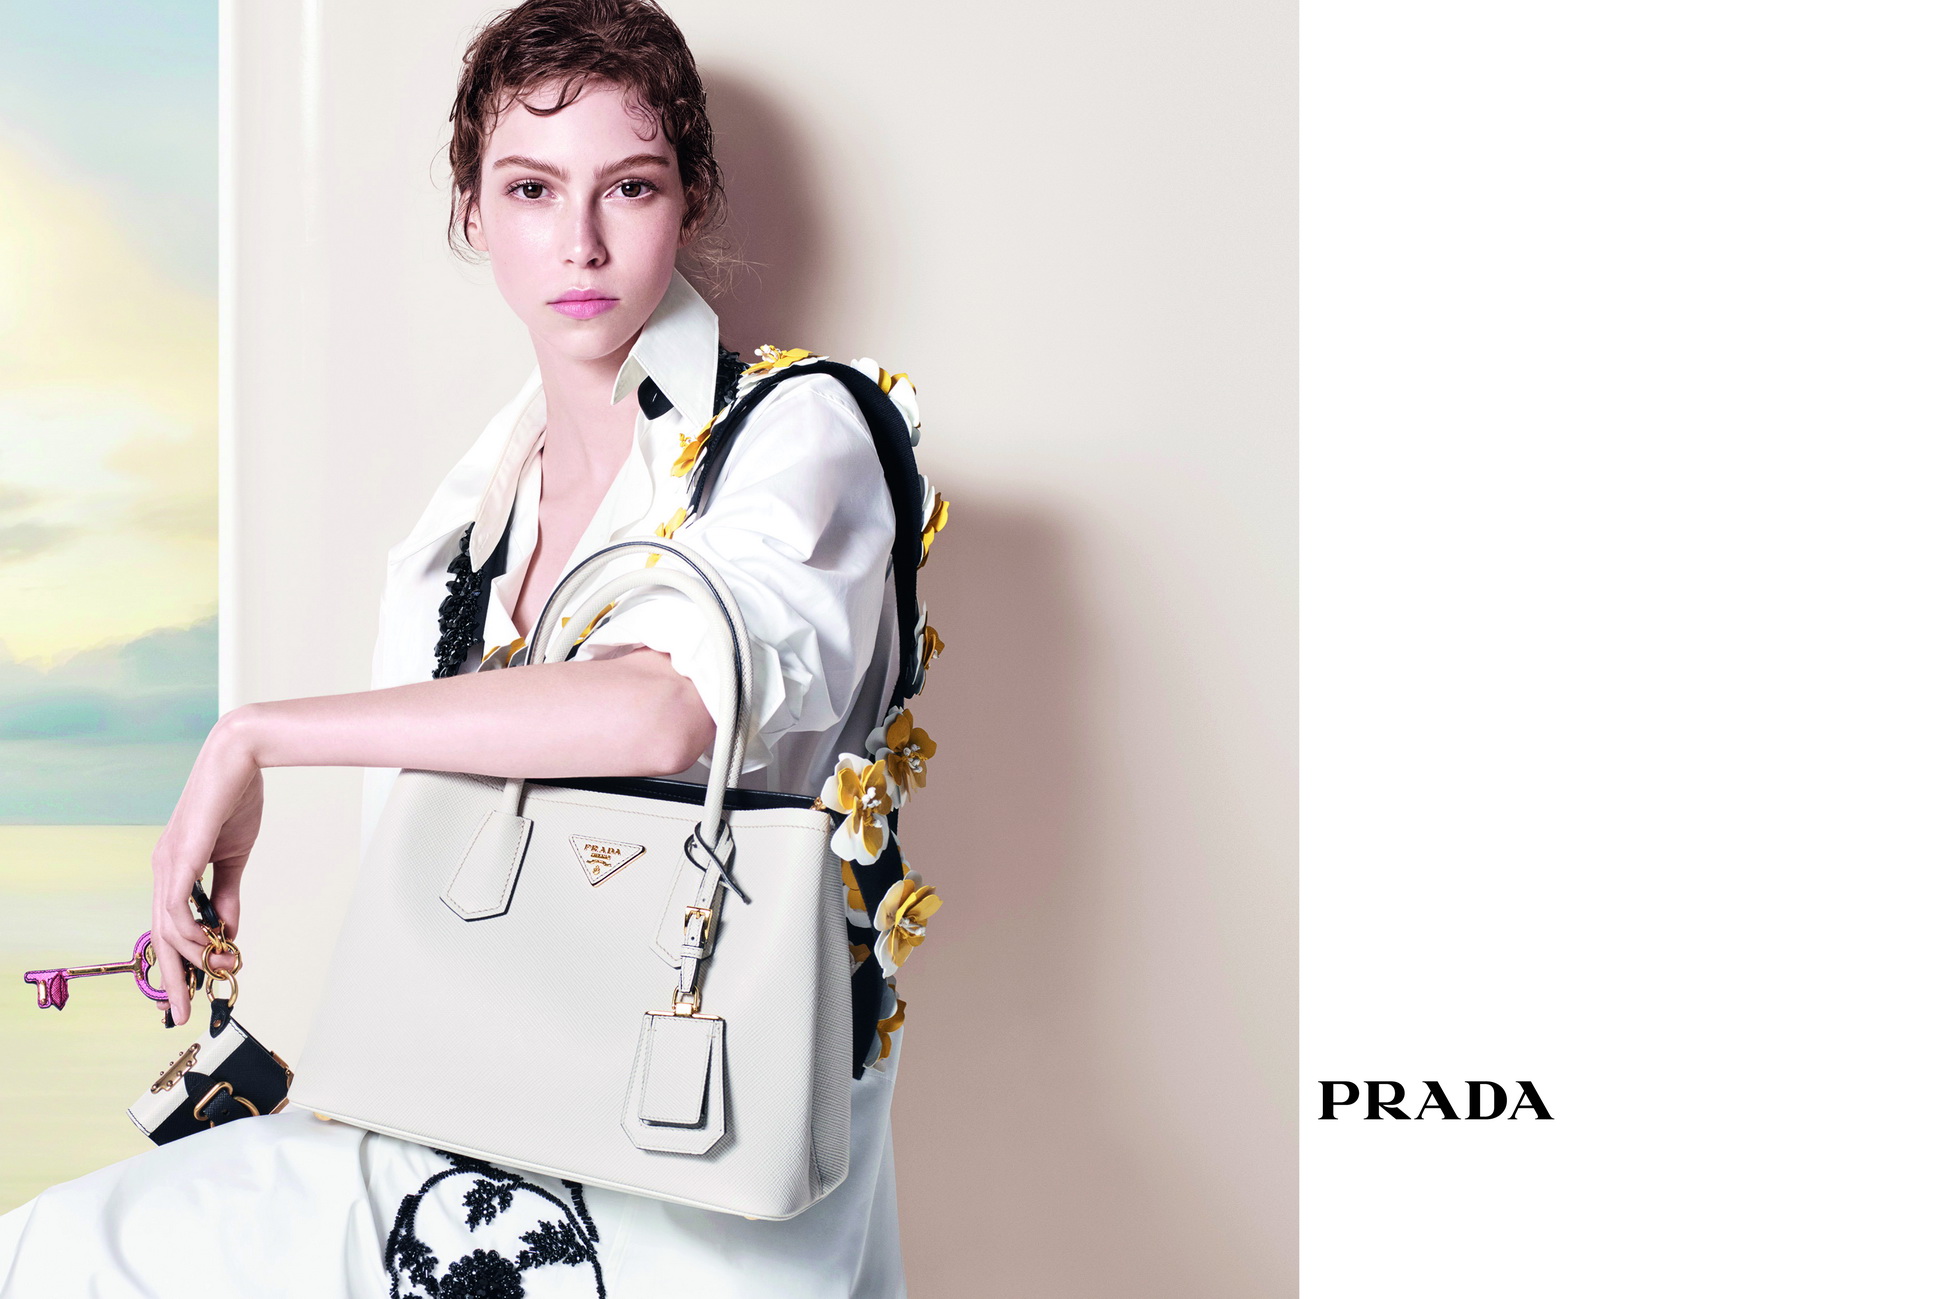 Prada представили новую рекламную кампанию-320x180